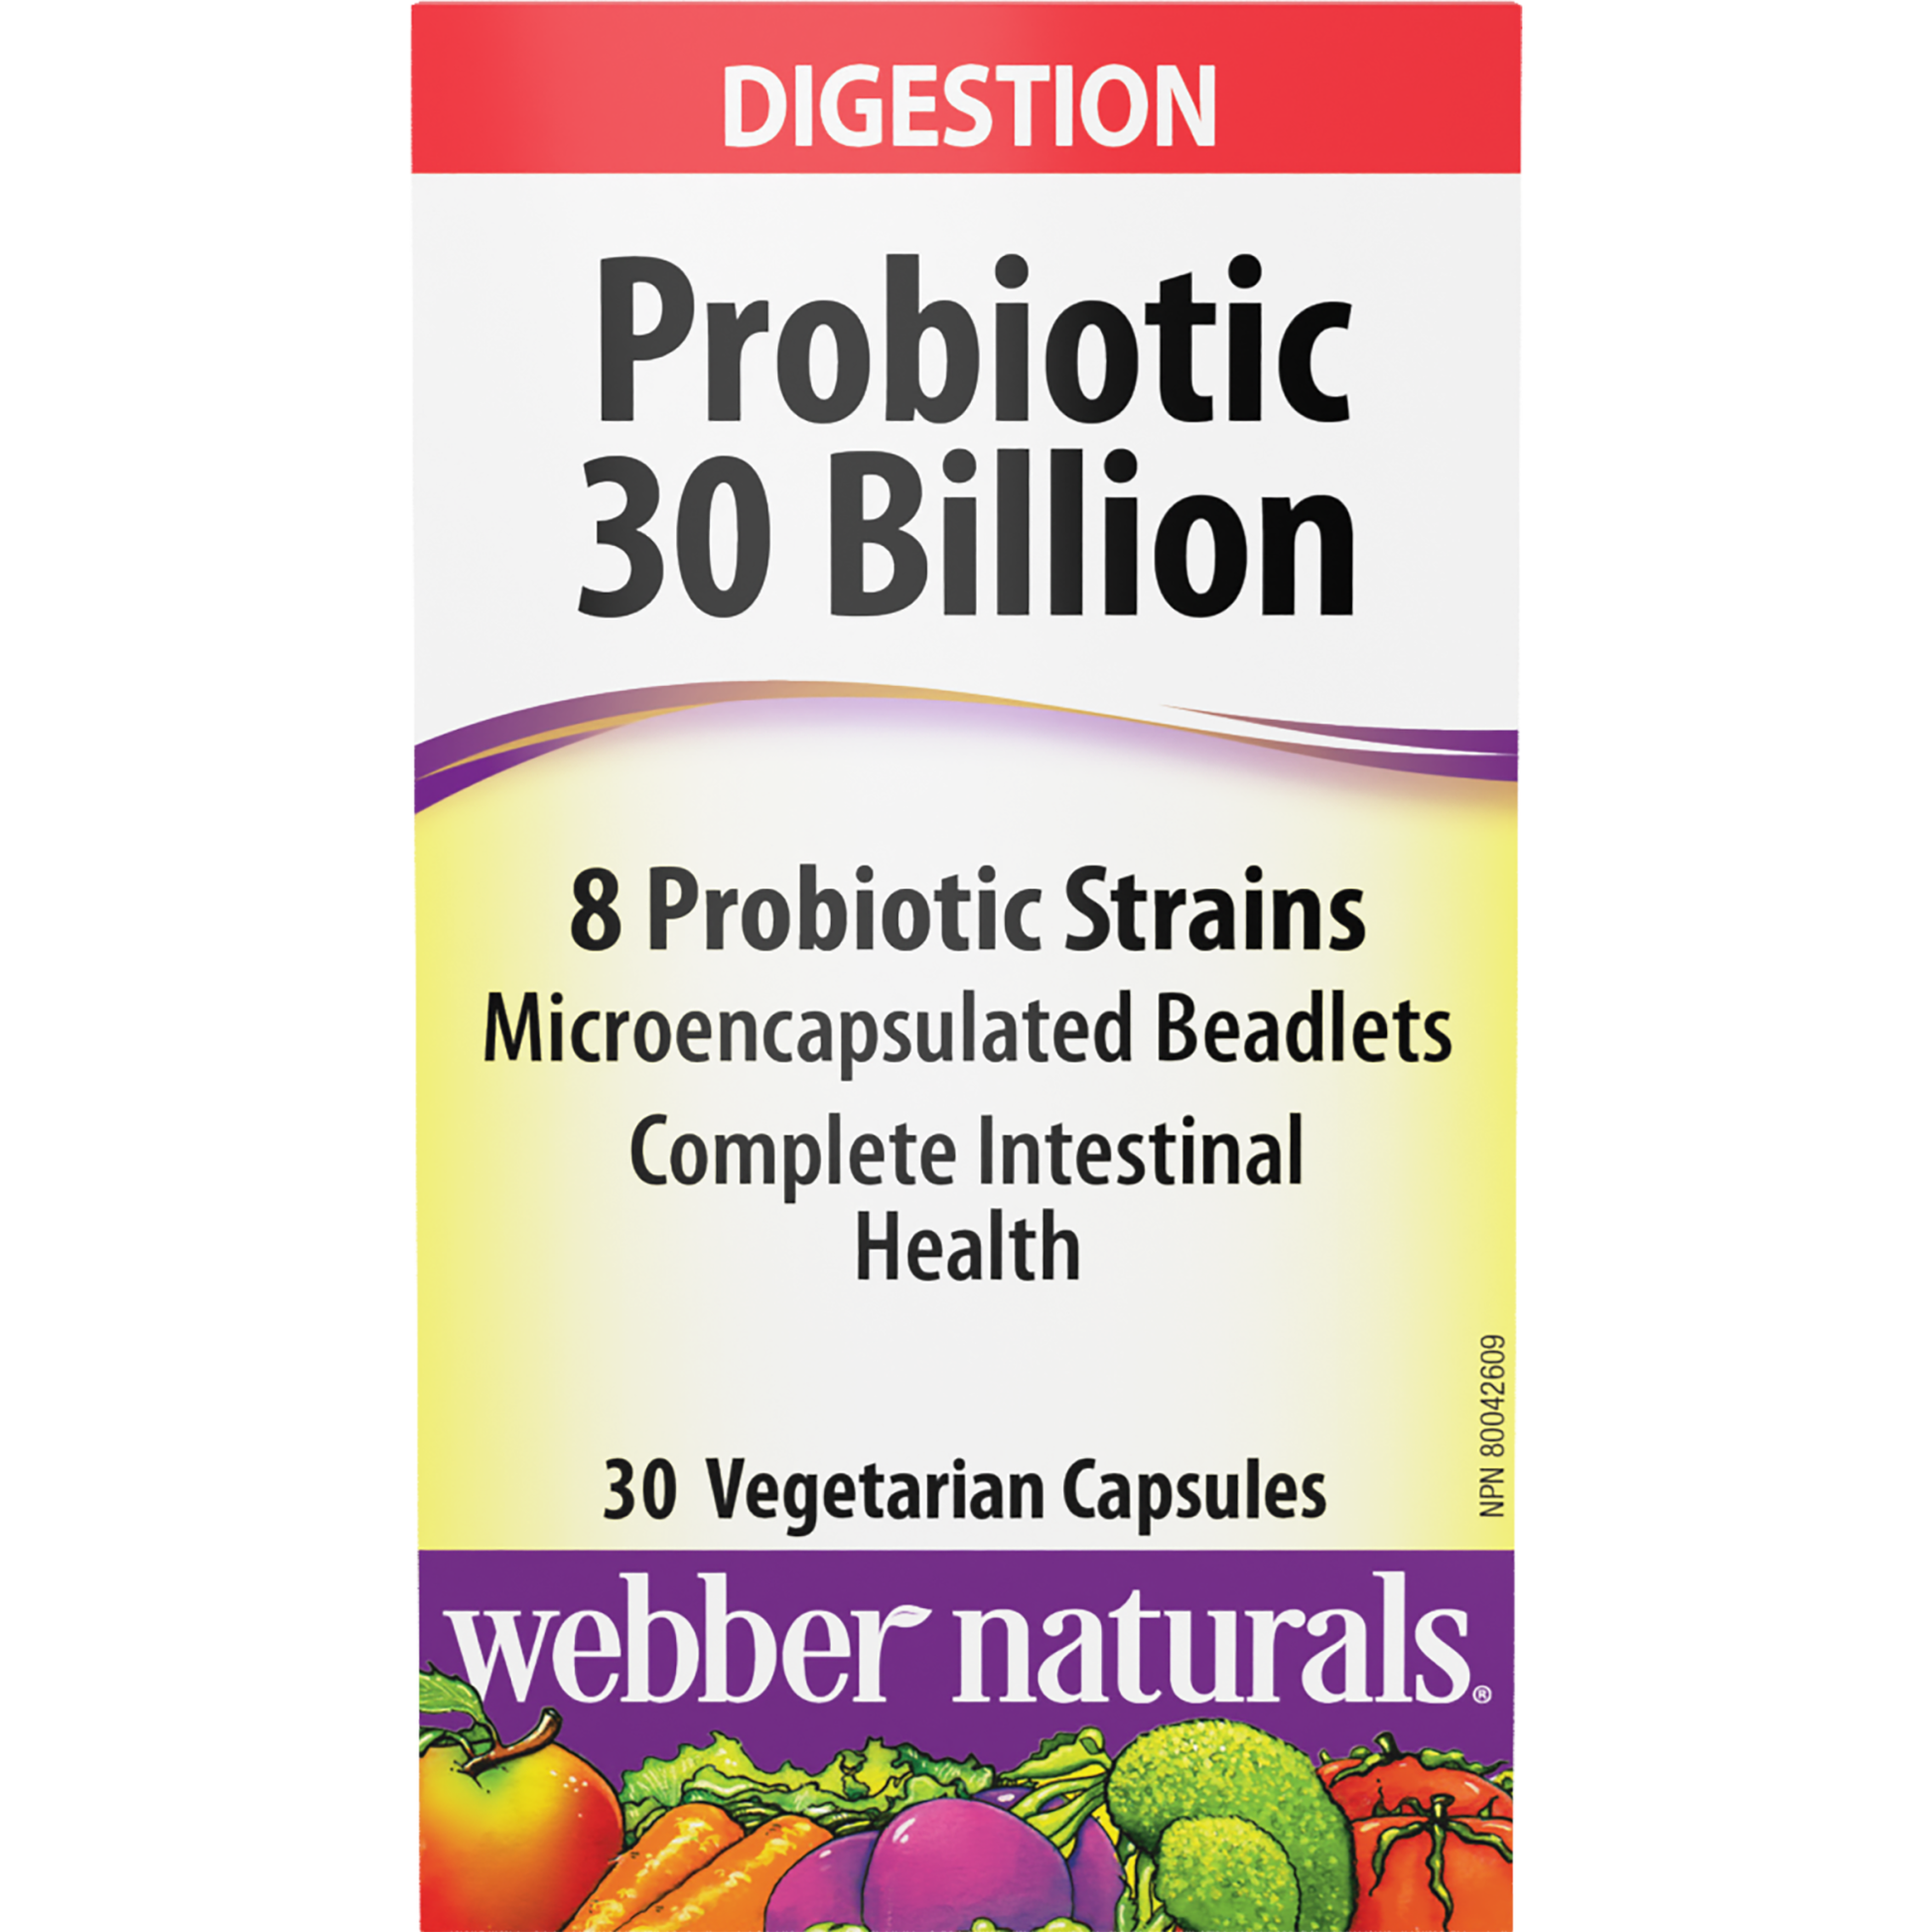 Probiotic 30 Billion 8 Probiotic Strains for Webber Naturals|v|hi-res|WN3216